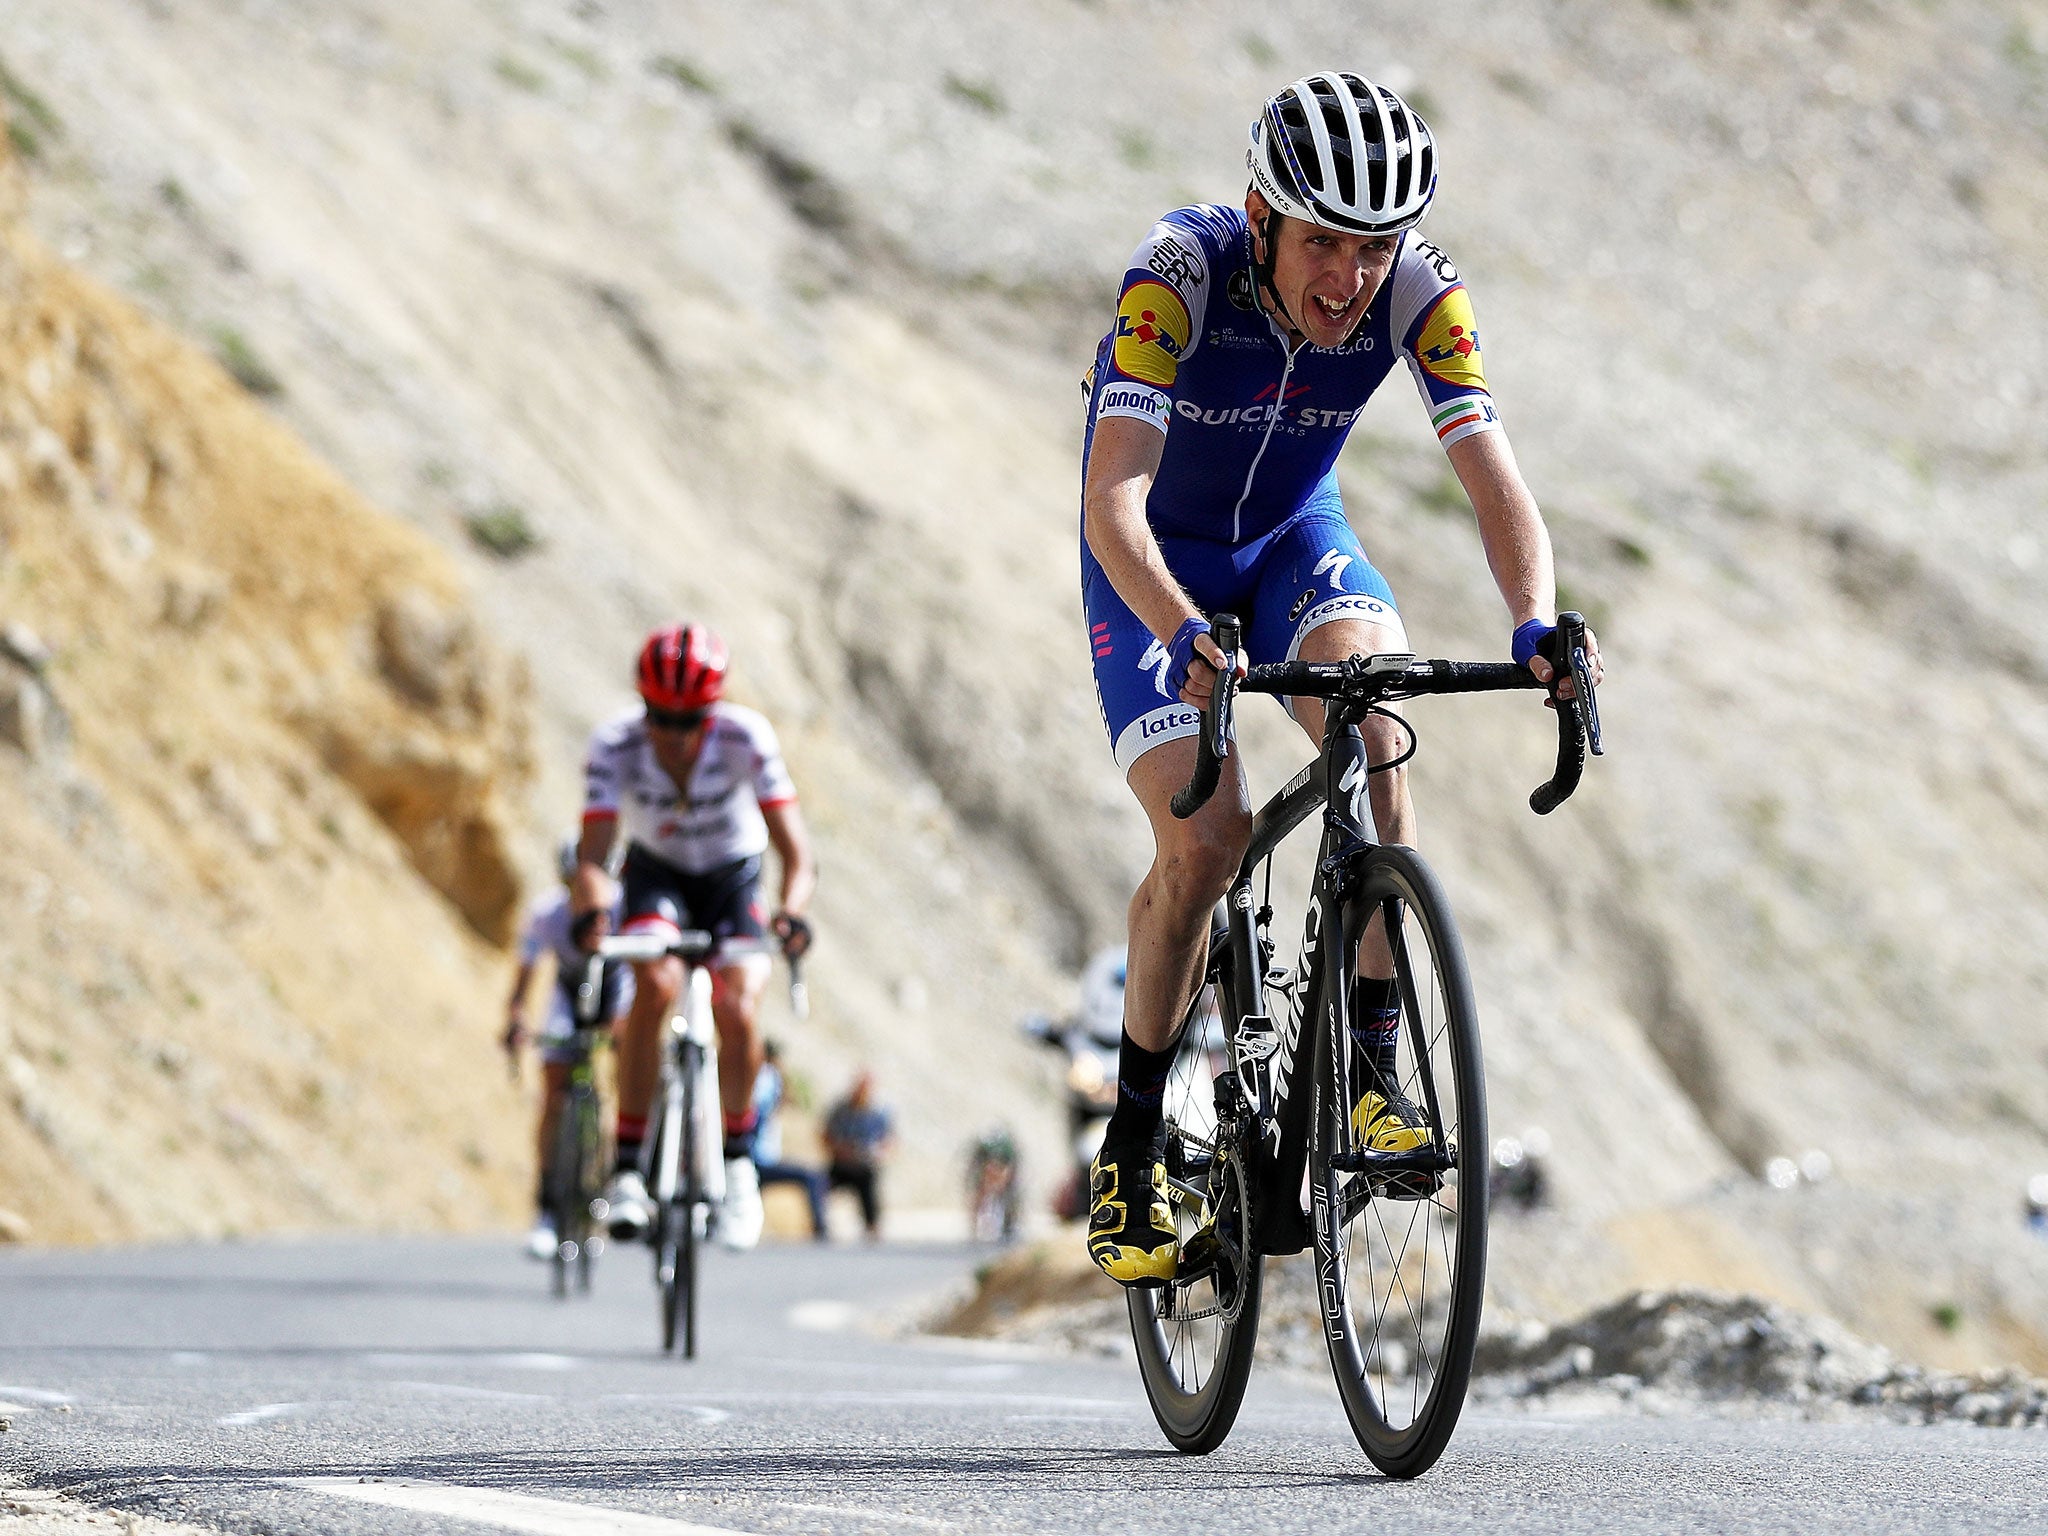 Dan Martin has not won a Tour de France stage since 2013